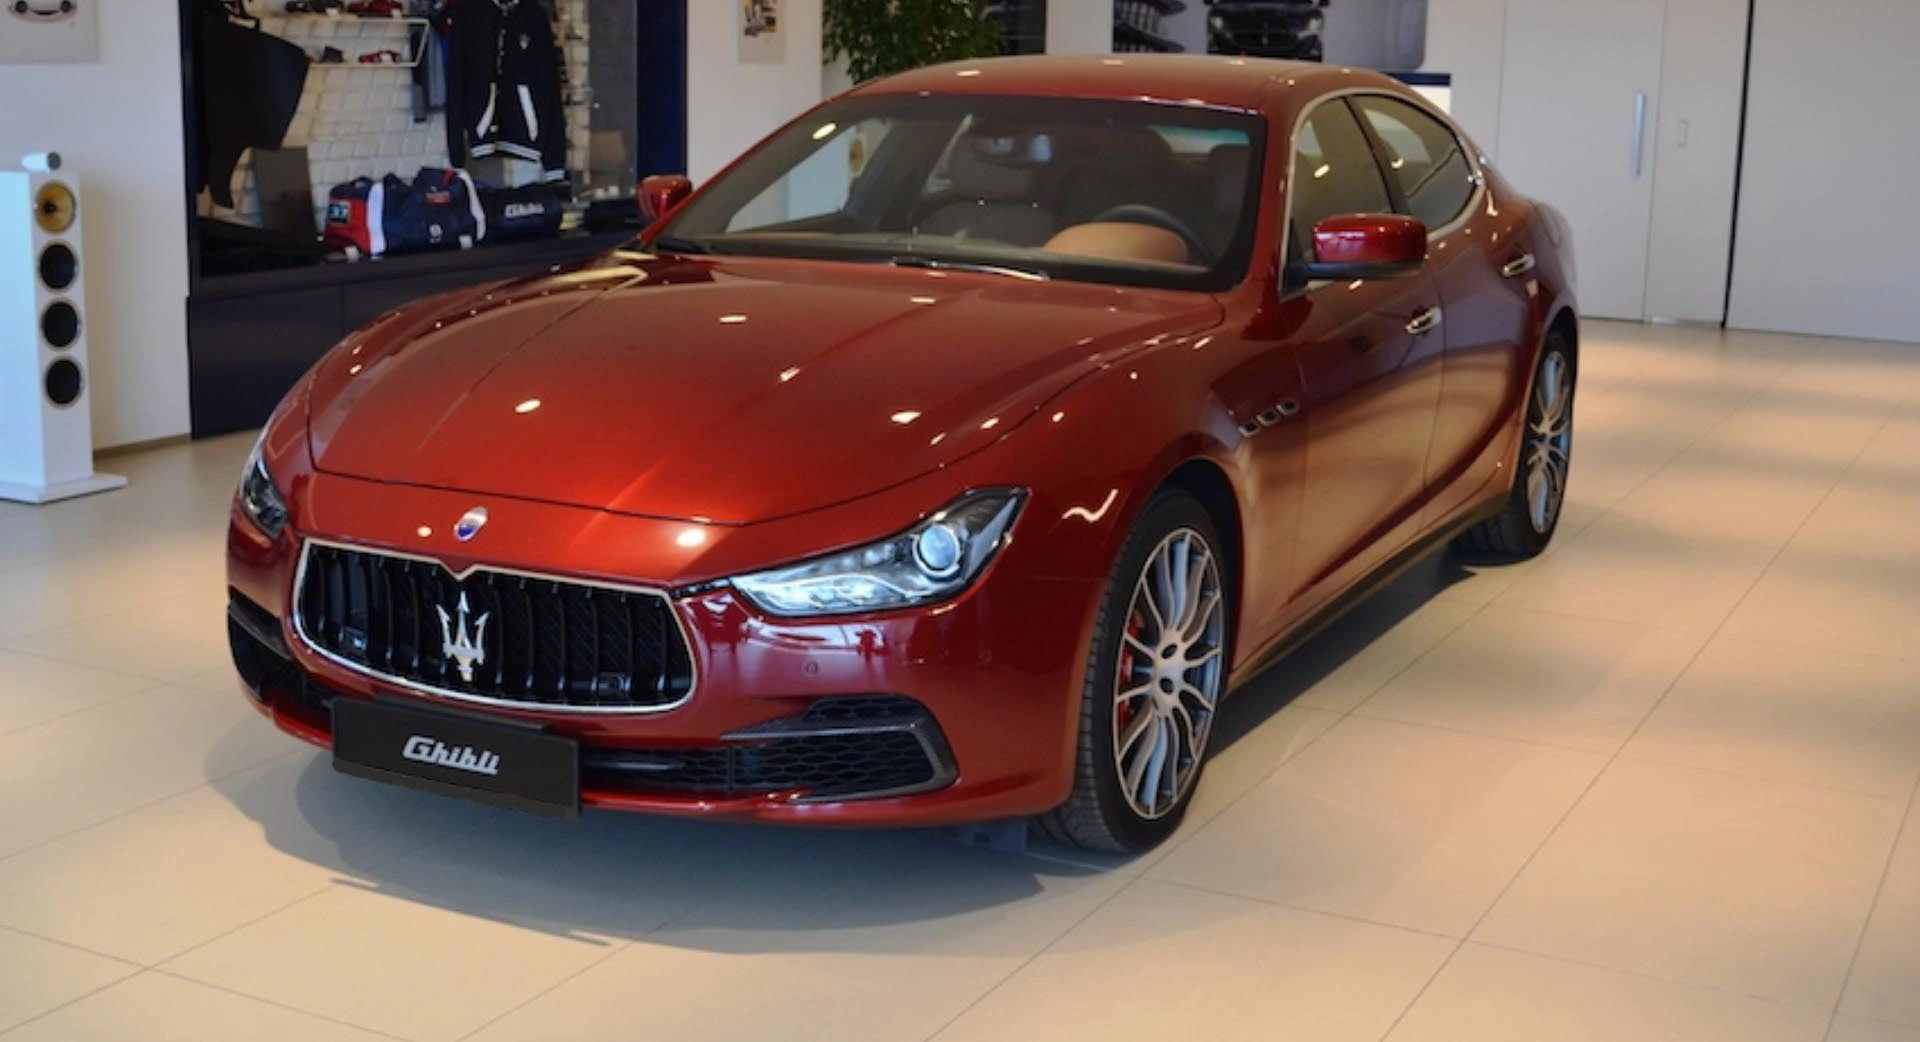 Preis für Tuning am Maserati Ghibli Modena 4trg. in Rot